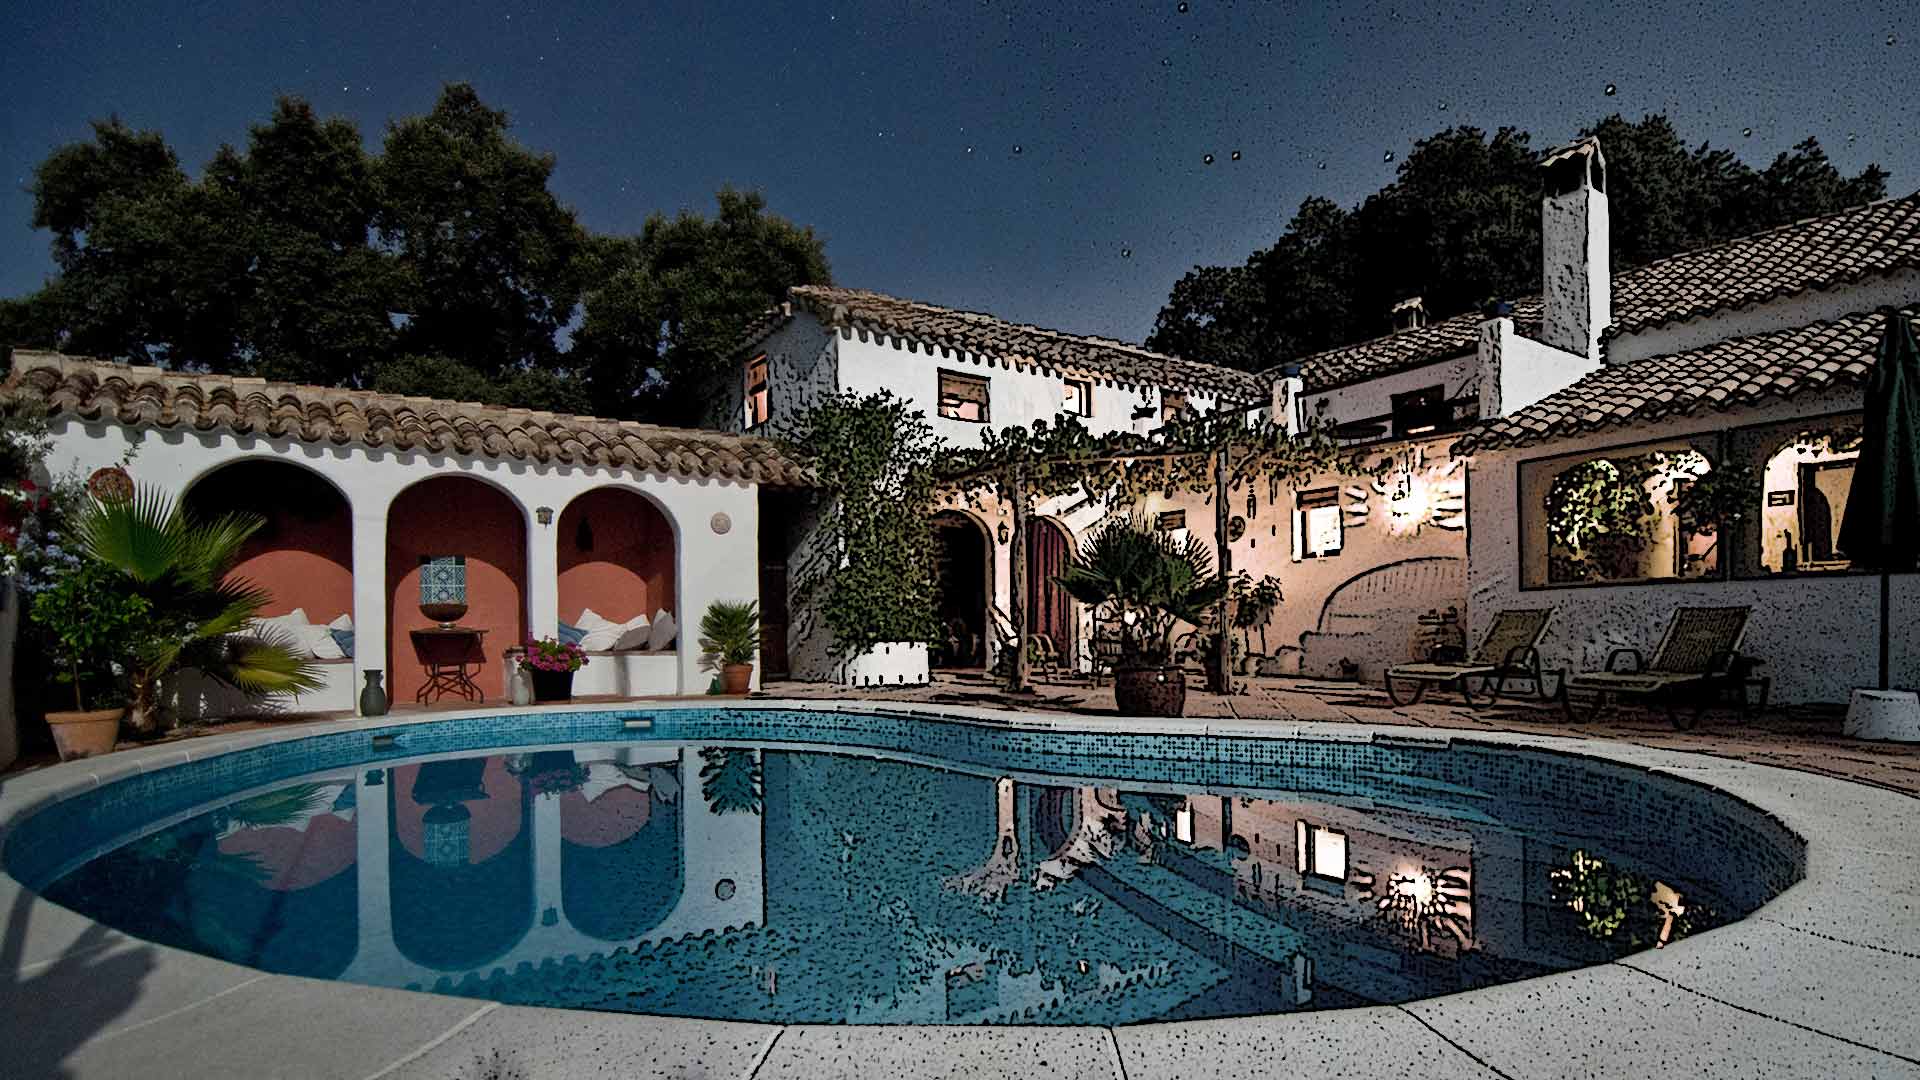 Maison avec piscine de nuit, image retouchée